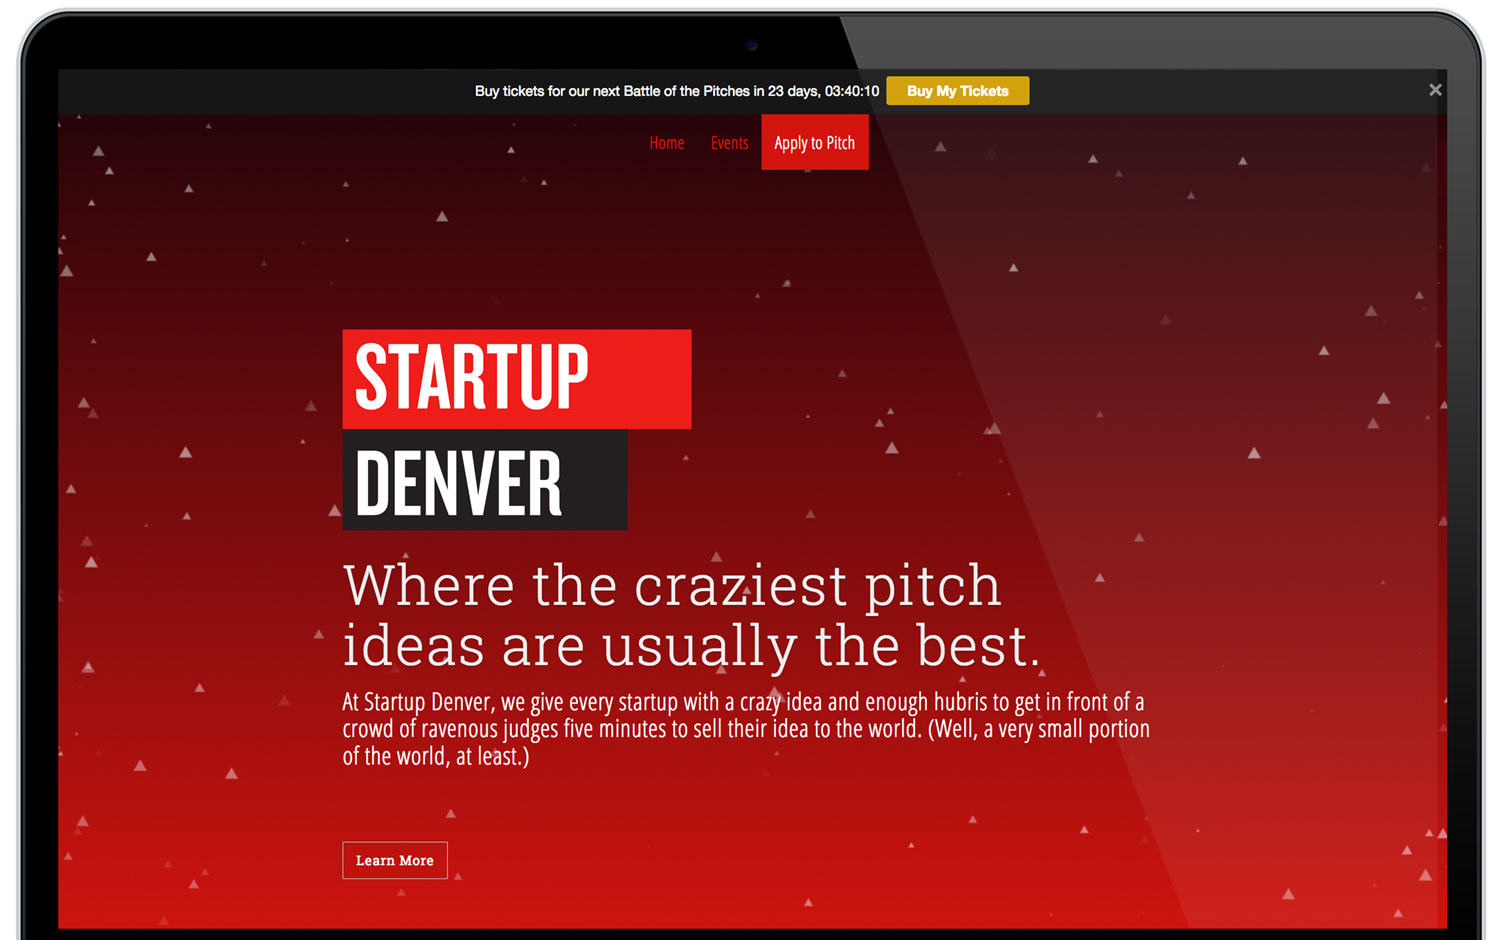 Startup Denver